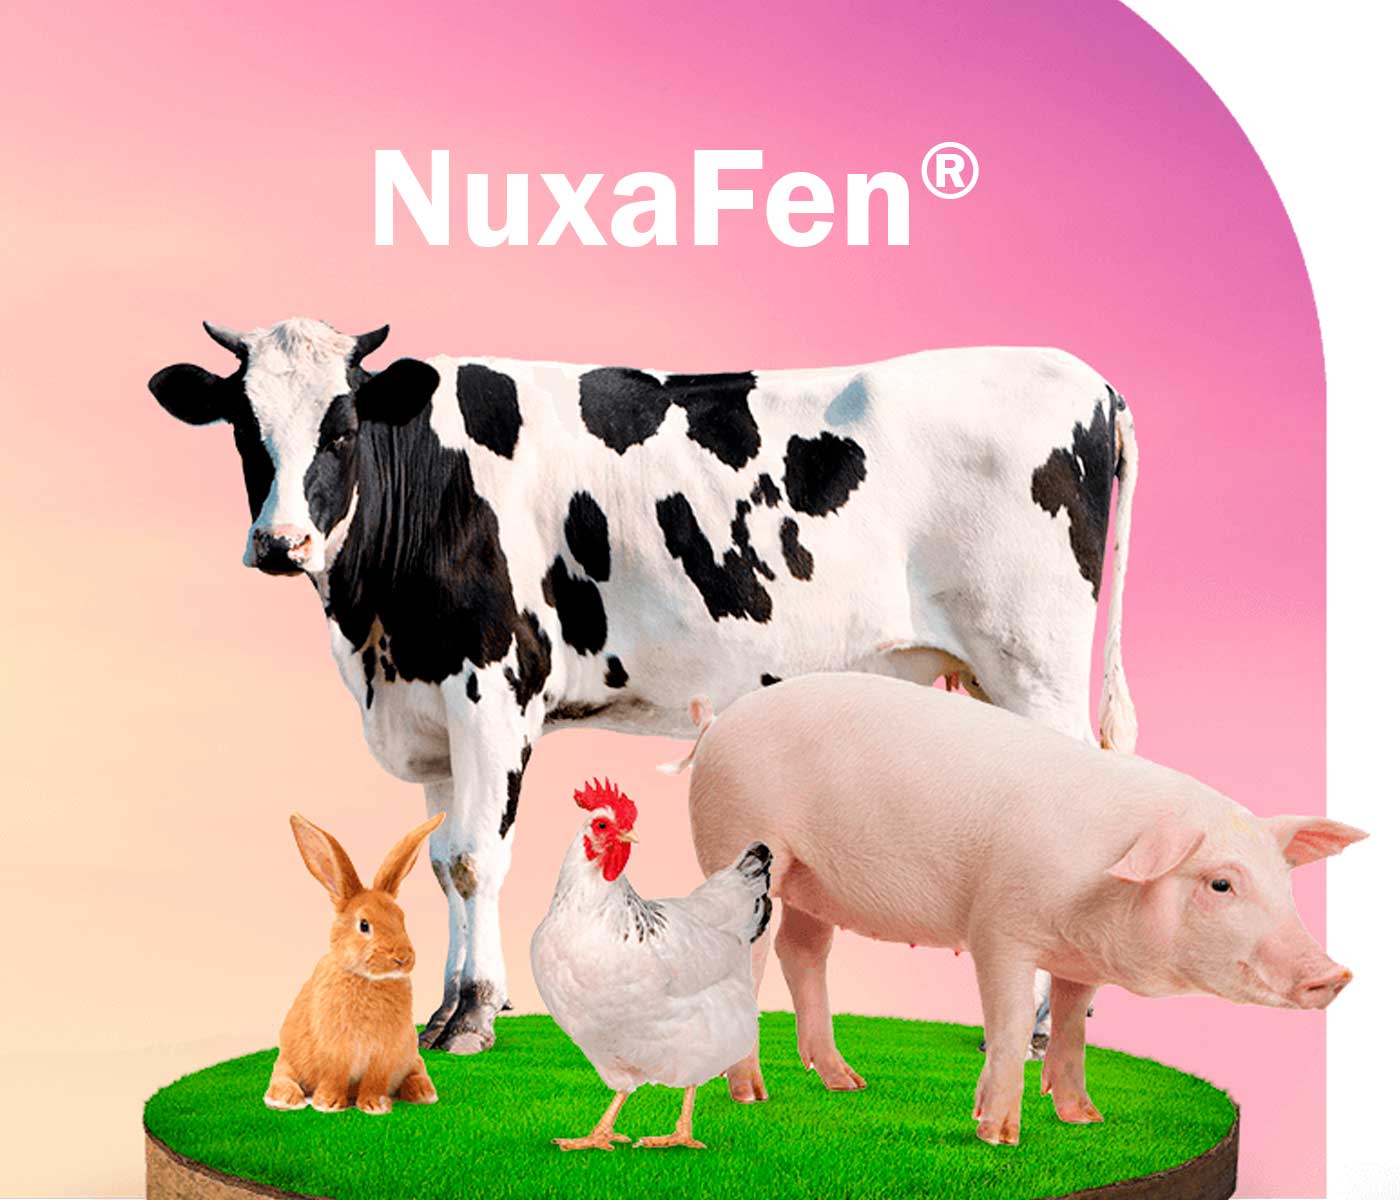 NuxaFen®: Inovação antioxidante e econômica para a nutrição animal